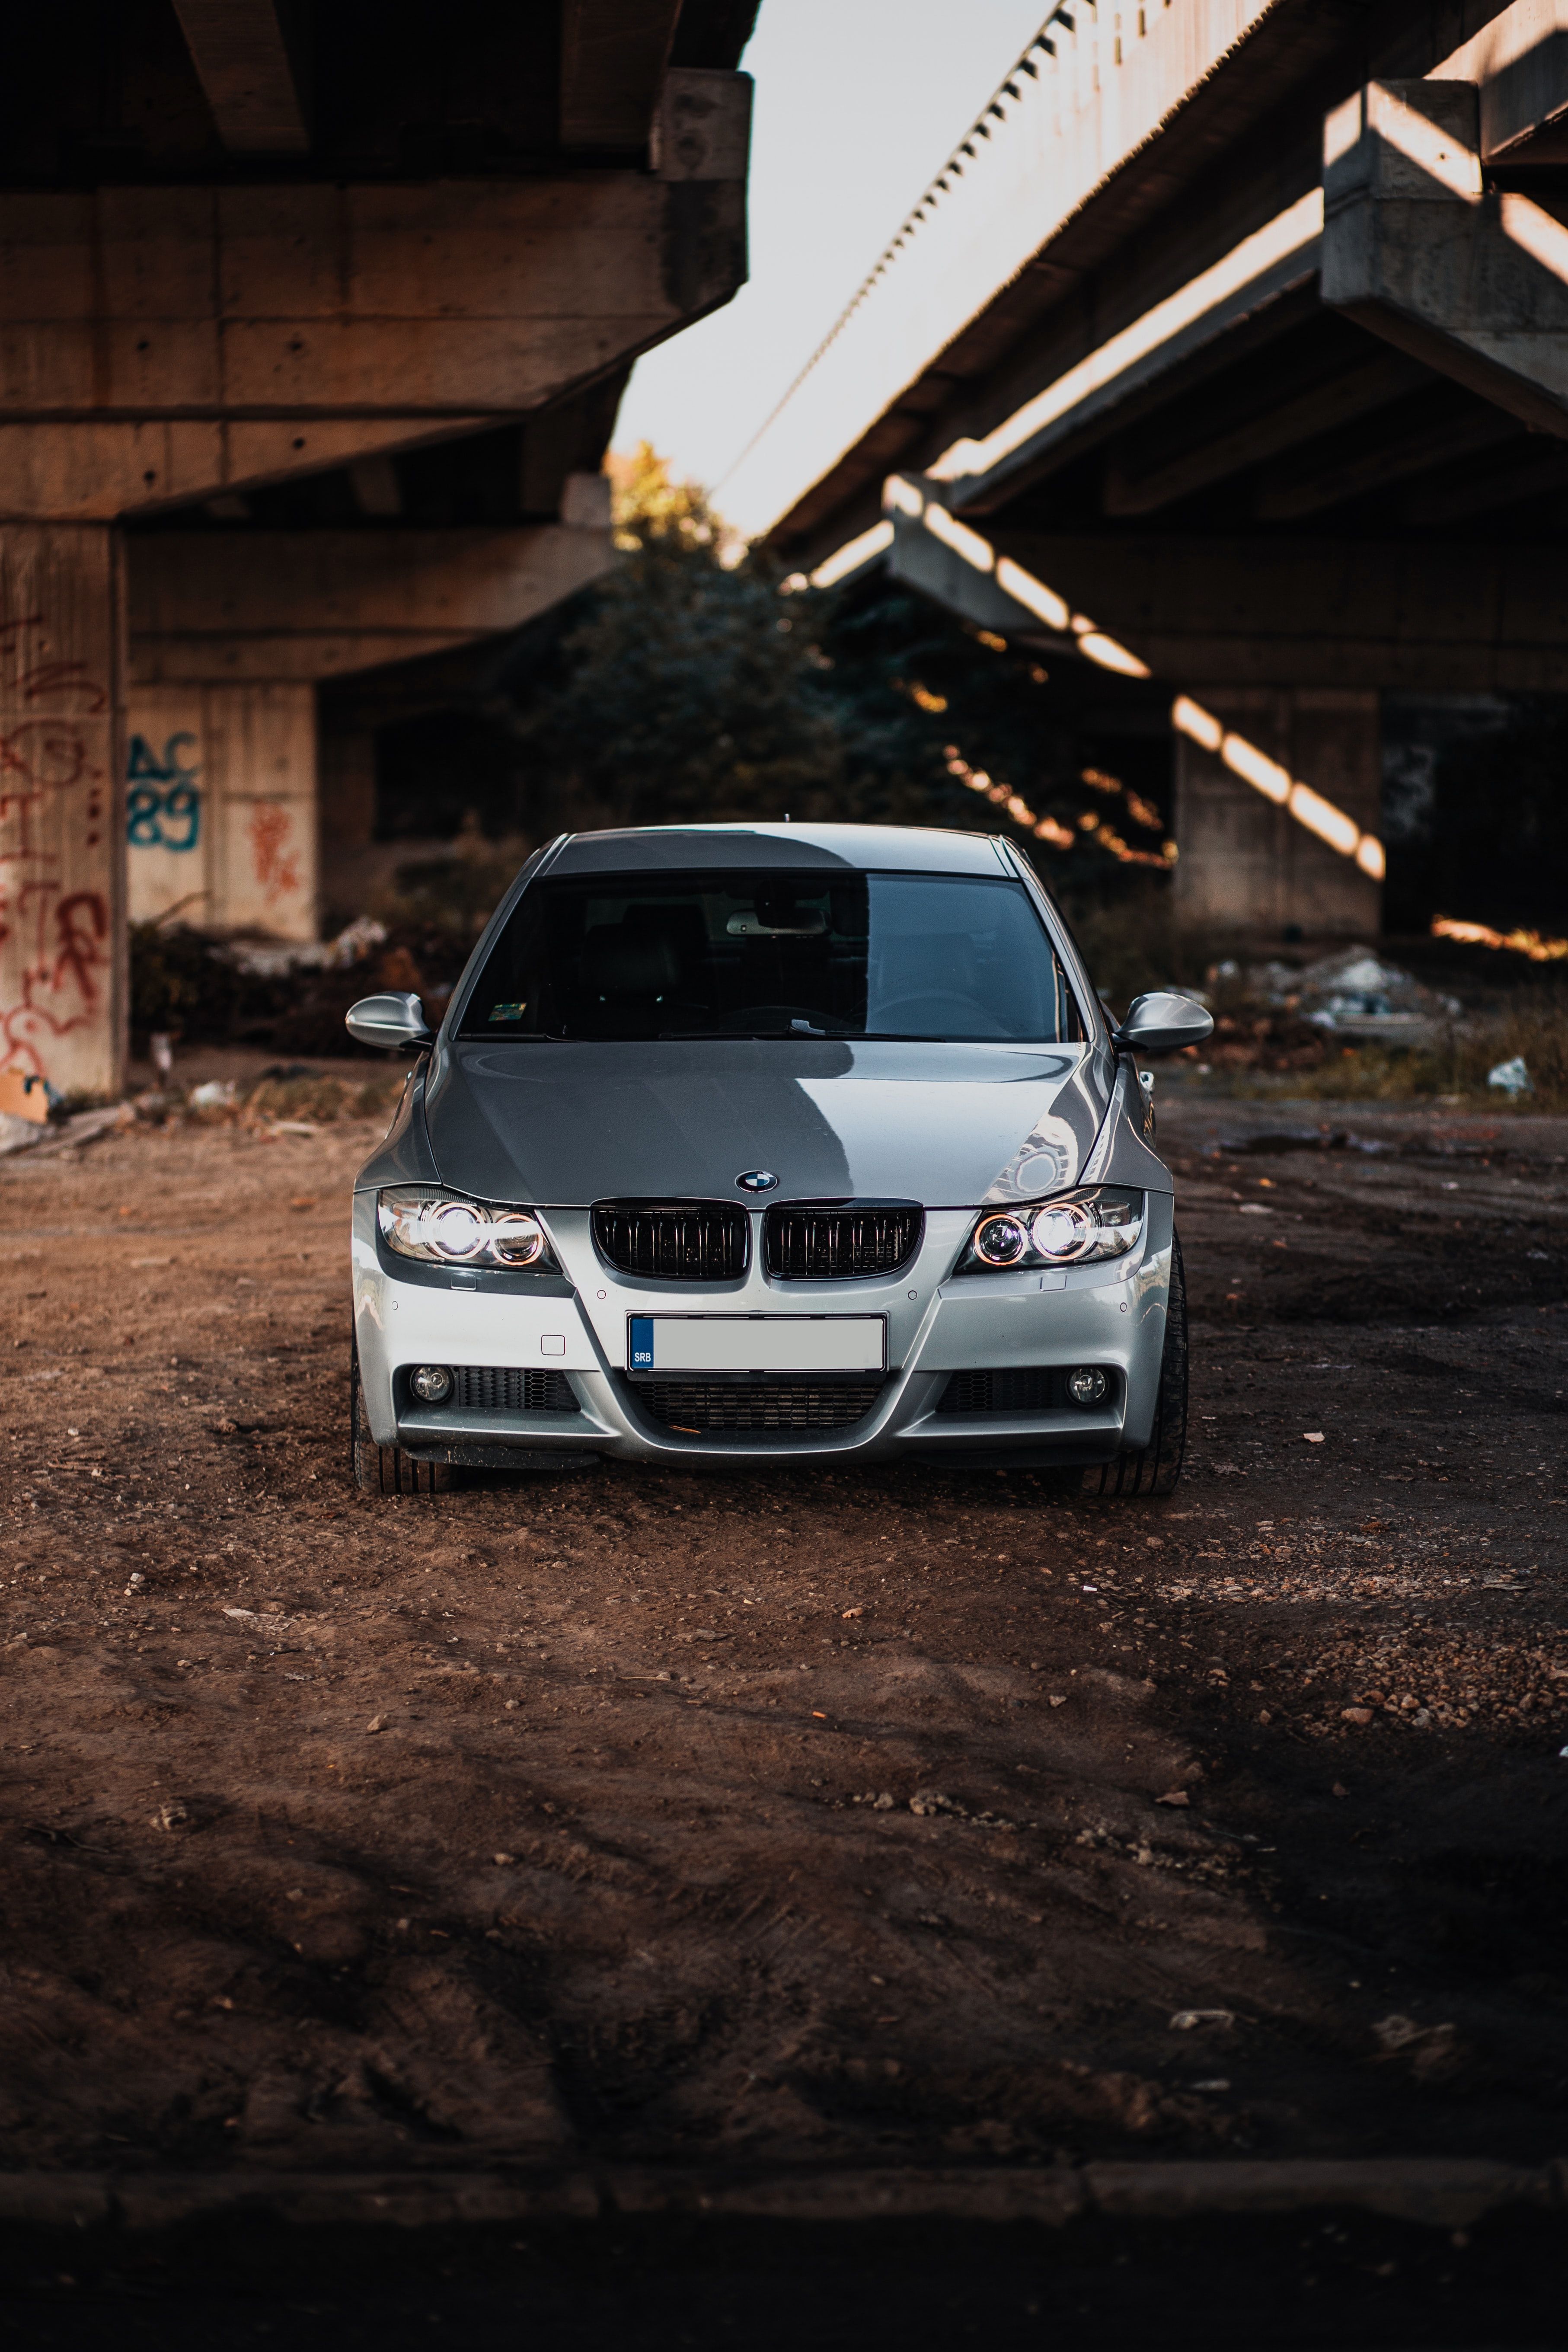  BMW Hintergrundbild 3627x5440. Laden Sie Das Bmw M3 Hintergrundbild Für Ihr Handy In Hochwertigen, Hintergrundbildern Bmw M3 Kostenlos Herunter